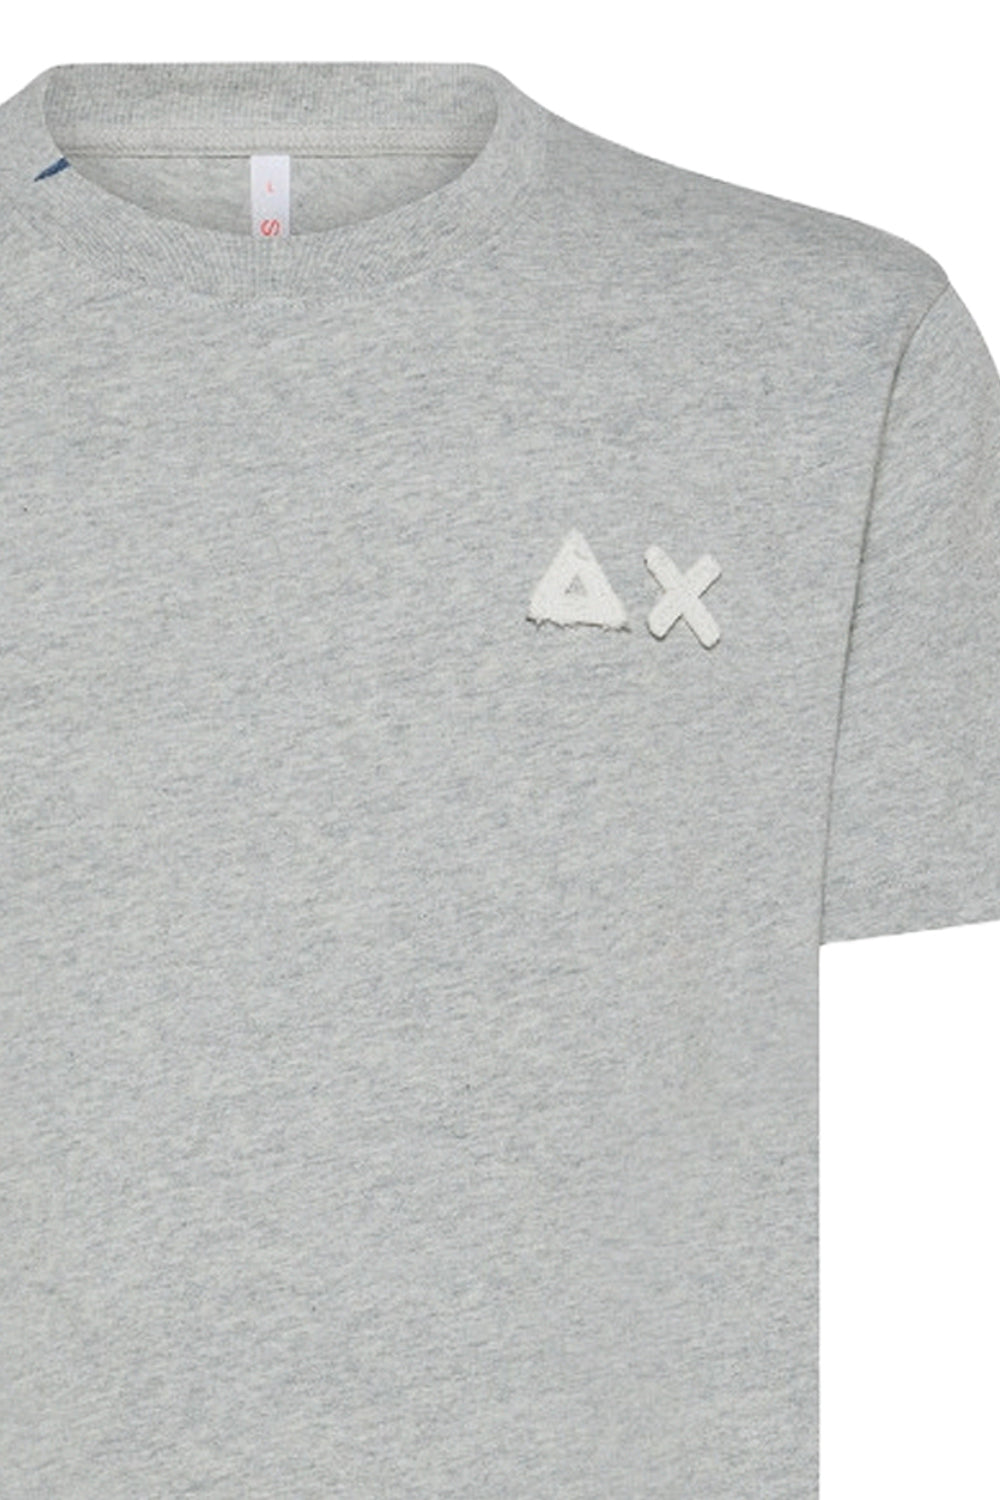 SUN 68 T-shirt in cotone con logo broken